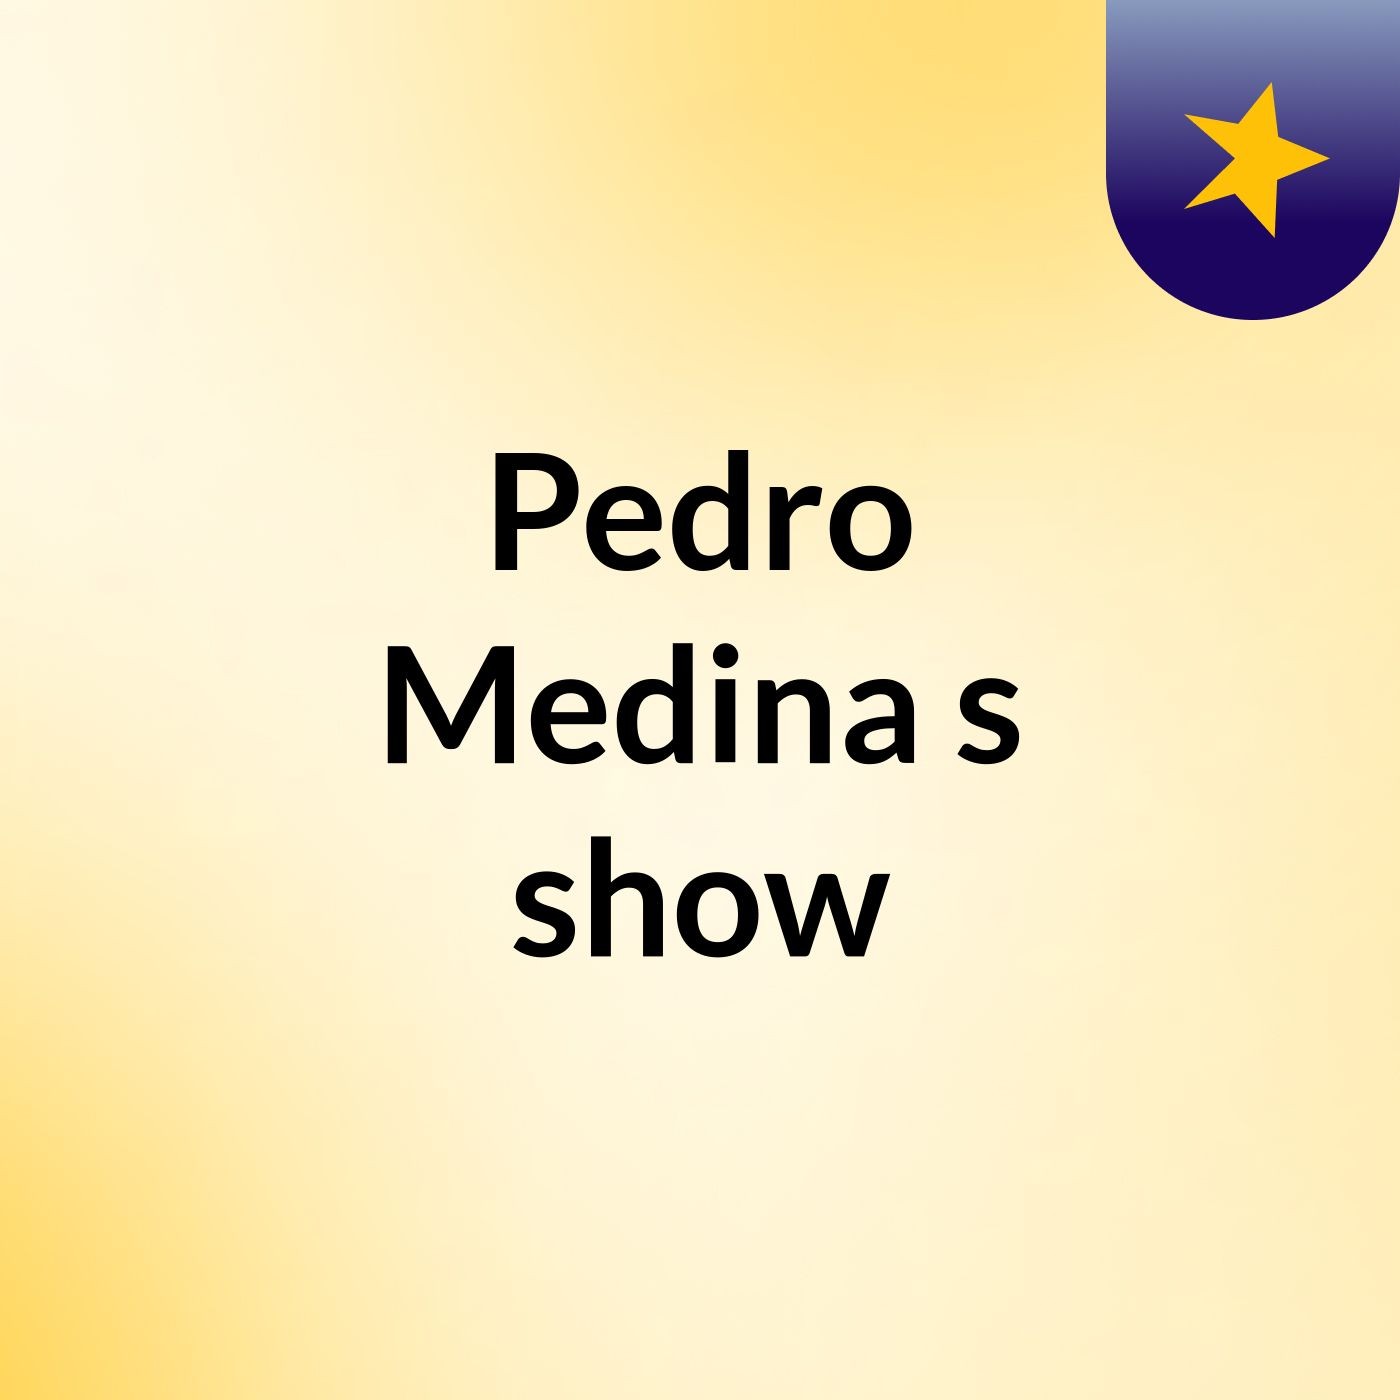 Pedro Medina's show